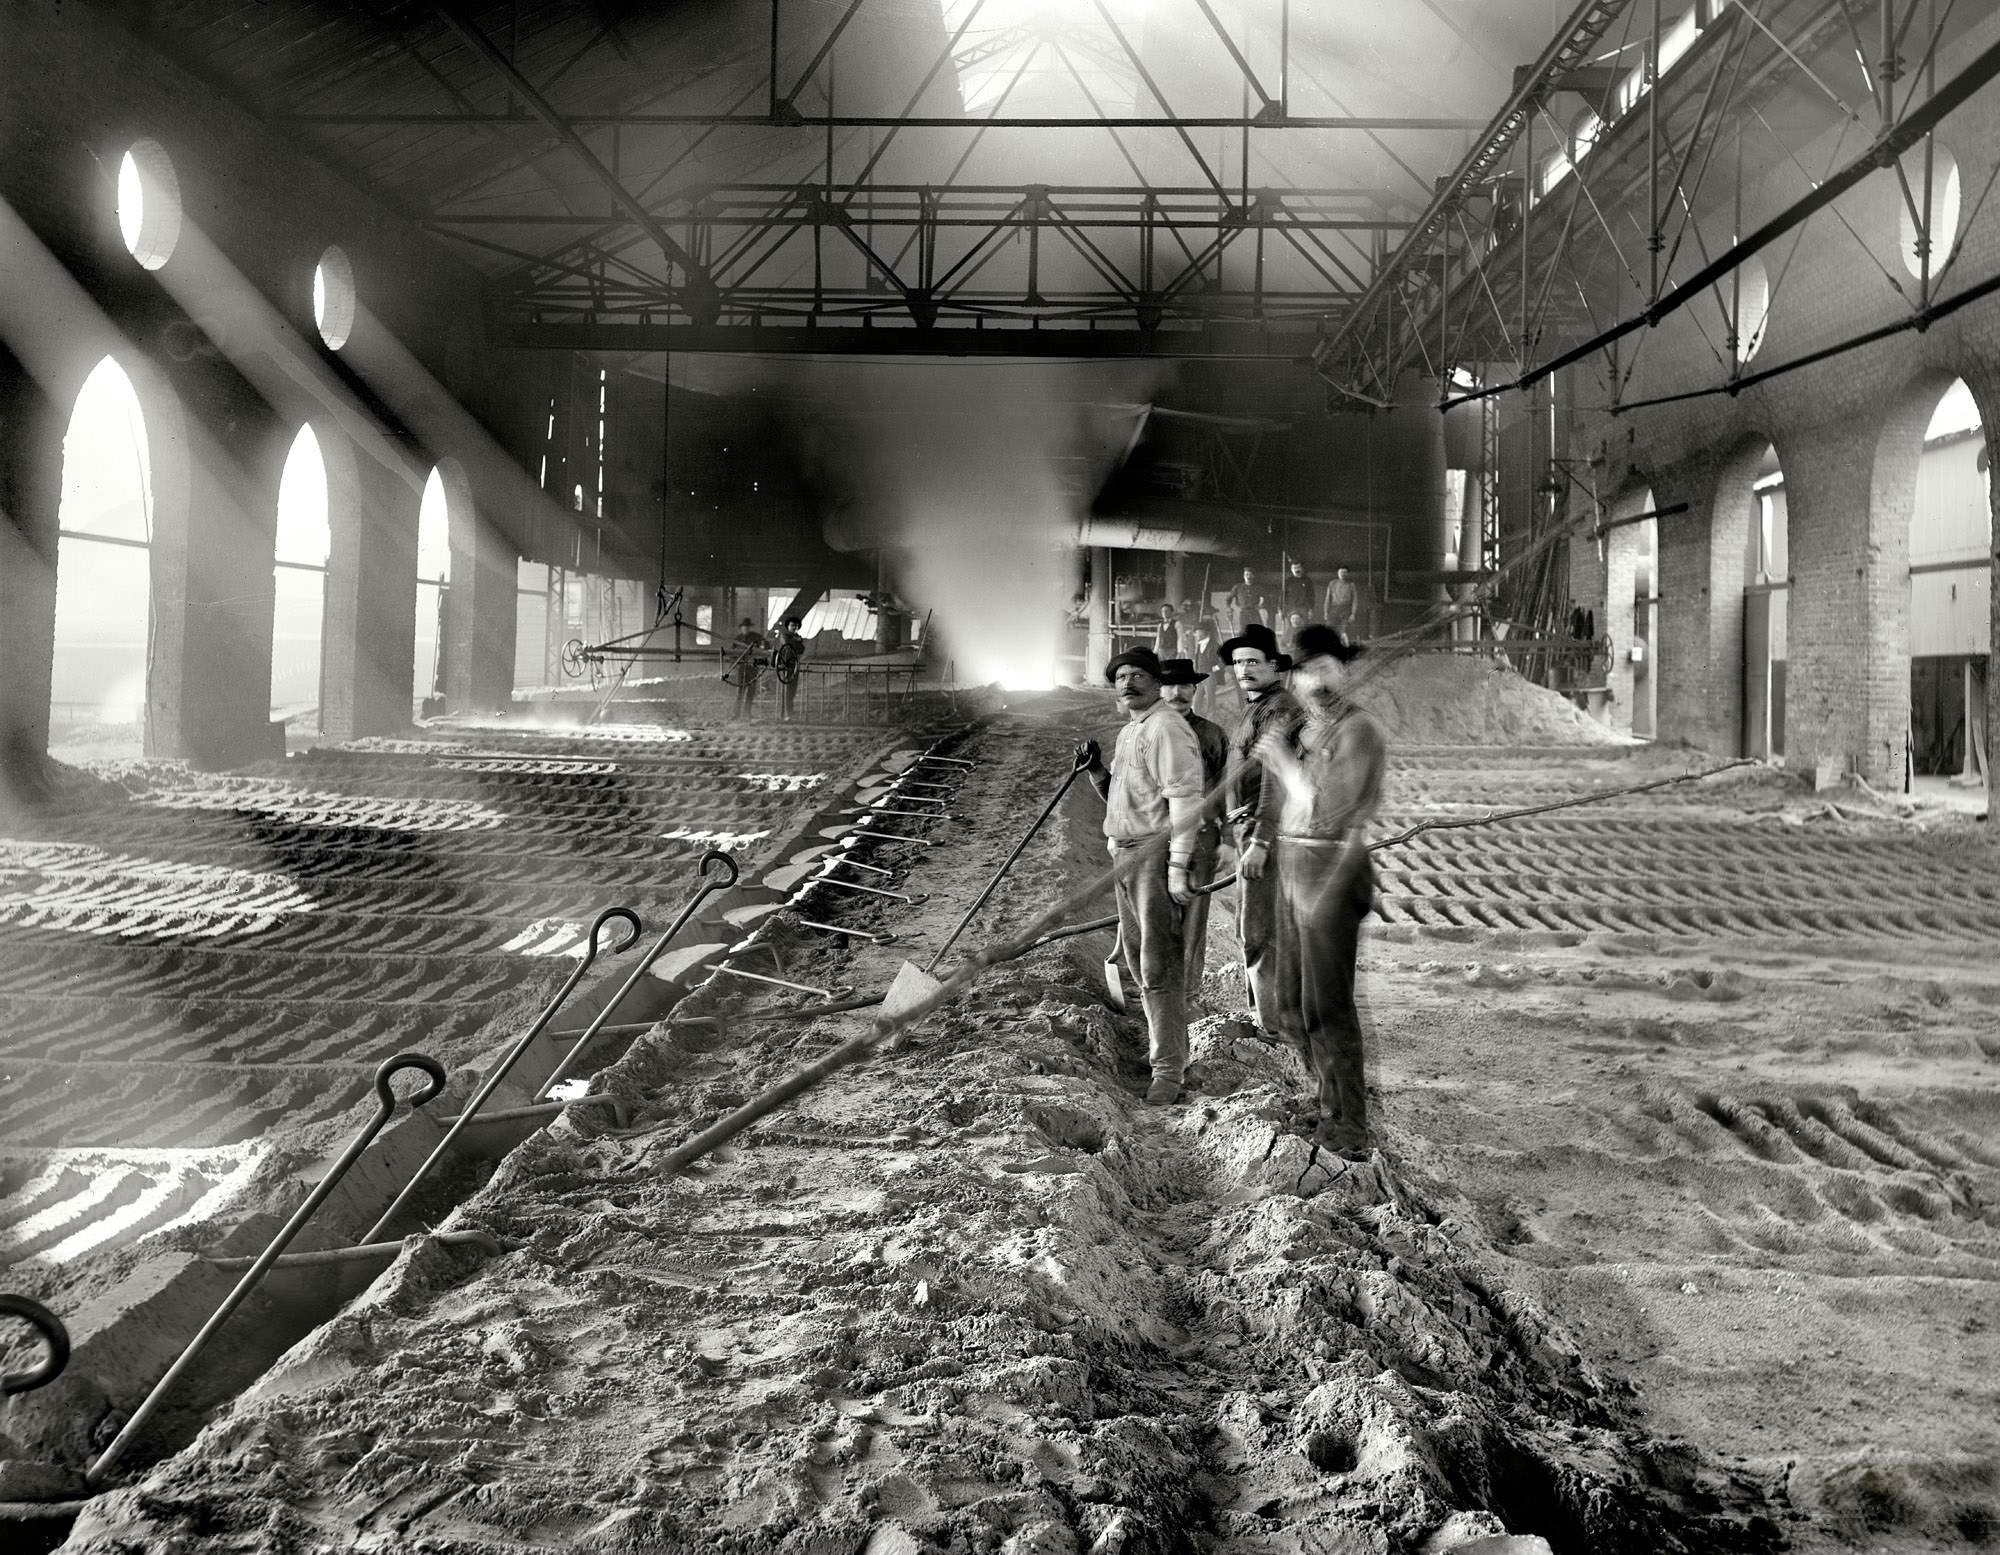 Casting pig iron, Iroquois smelter, Chicago circa 1901